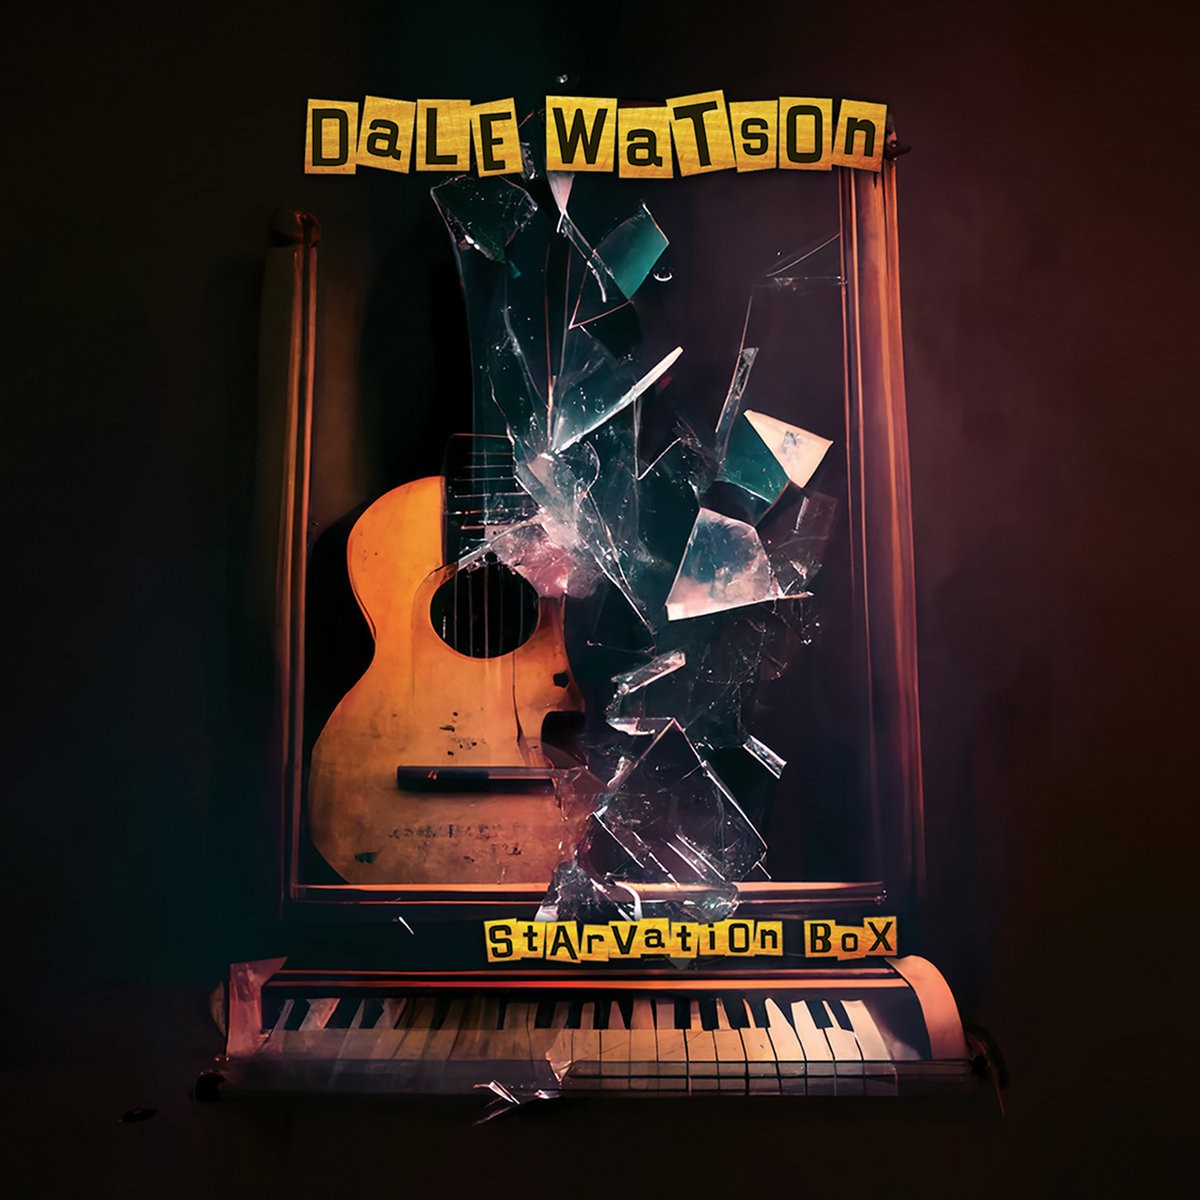 Dale Watson - Starvation Box